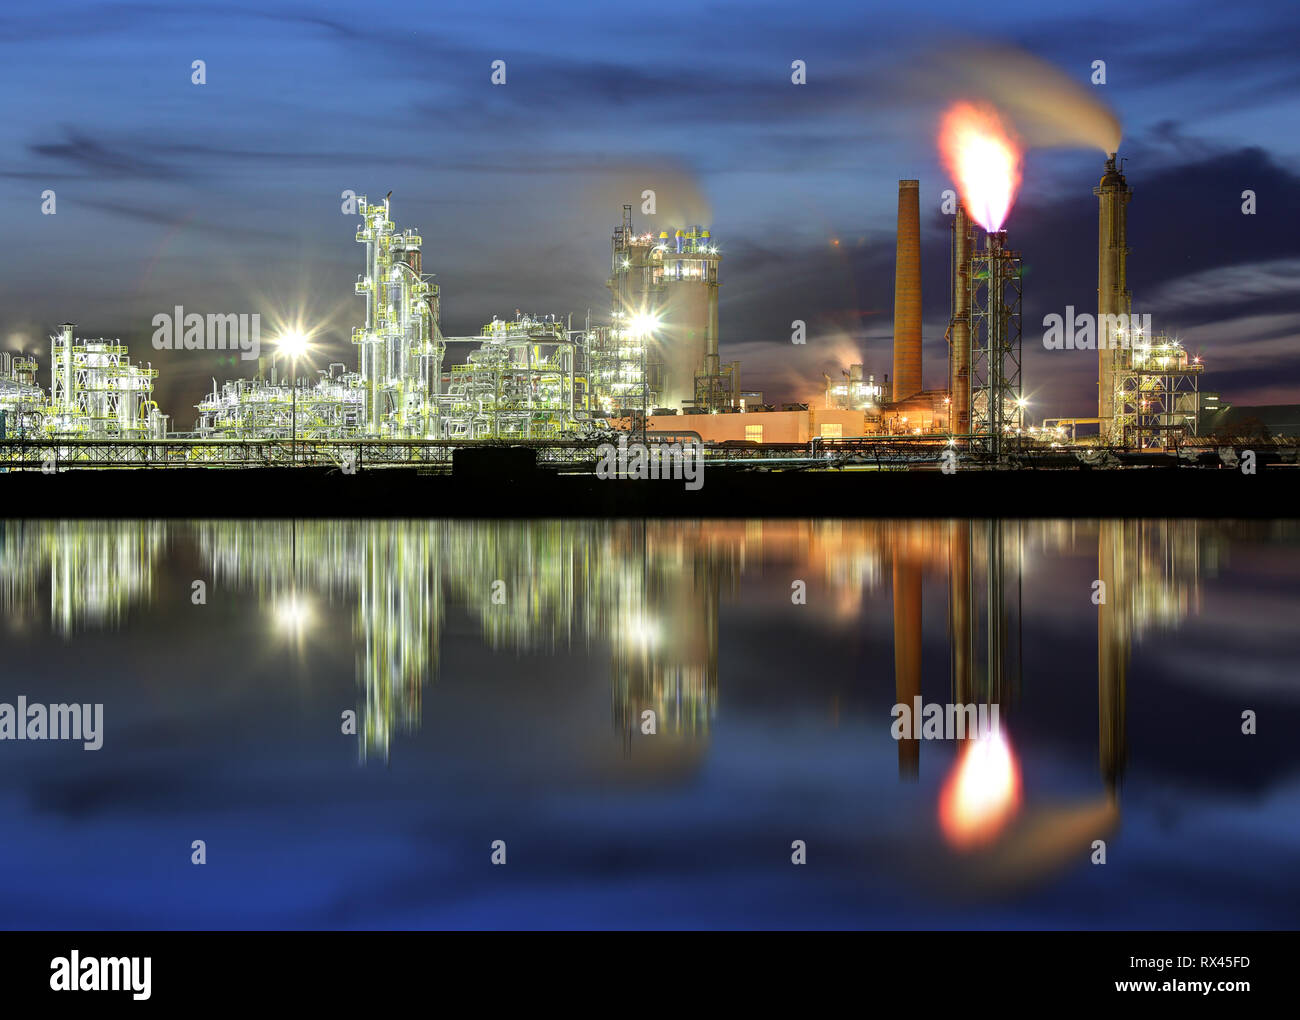 - Raffinerie usine industrielle pétrochimique Banque D'Images